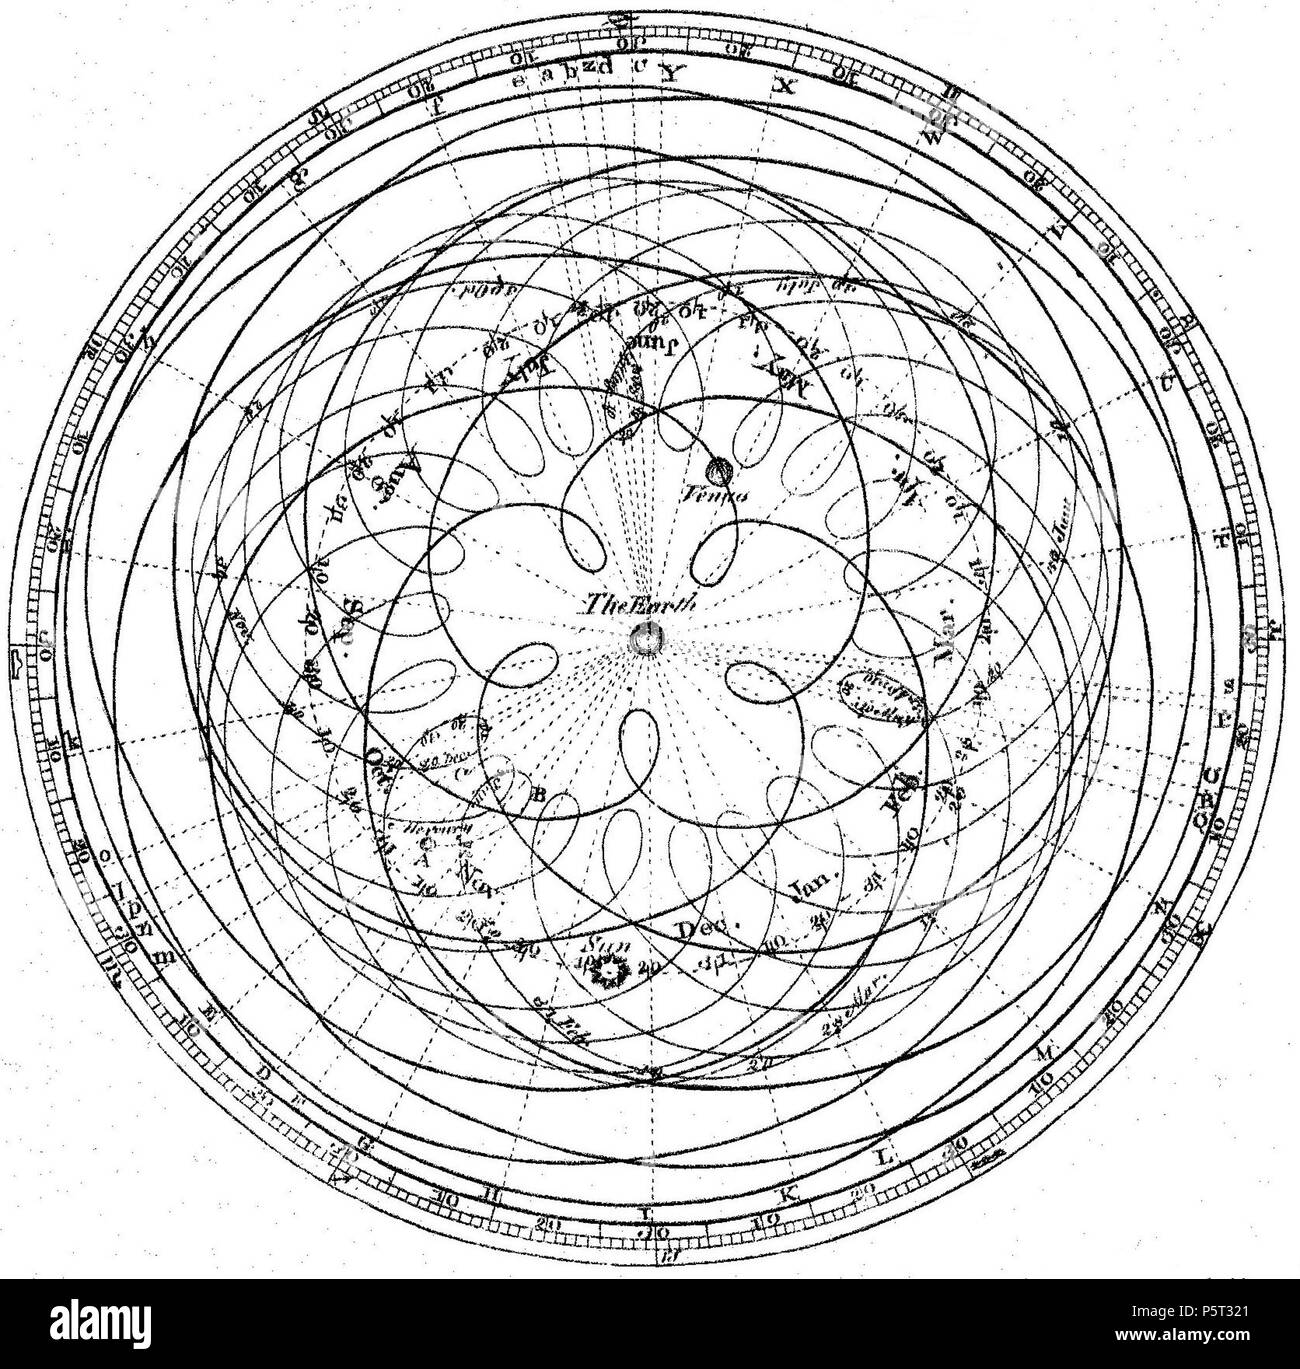 N/A. Anglais : Représentation de la mouvement apparent du Soleil, Mercure, Vénus et de la terre. Pris de l 'Astronomie' article dans la première édition de:Encyclopedia Britannica (1771). Ce diagramme montre géocentrique, à partir de l'endroit de la terre, l'orbite annuel apparent du soleil, l'orbite de Mercure pour 7 ans, et l'orbite de Vénus pour 8 ans, après laquelle Vénus revient à presque la même position apparente par rapport à la terre et du soleil. 1771. James Ferguson (1710-1776), basé sur des schémas similaires de Giovanni Cassini (1625-1712) et le Dr Roger Long (1680-1770), gravé pour l'encycl Banque D'Images